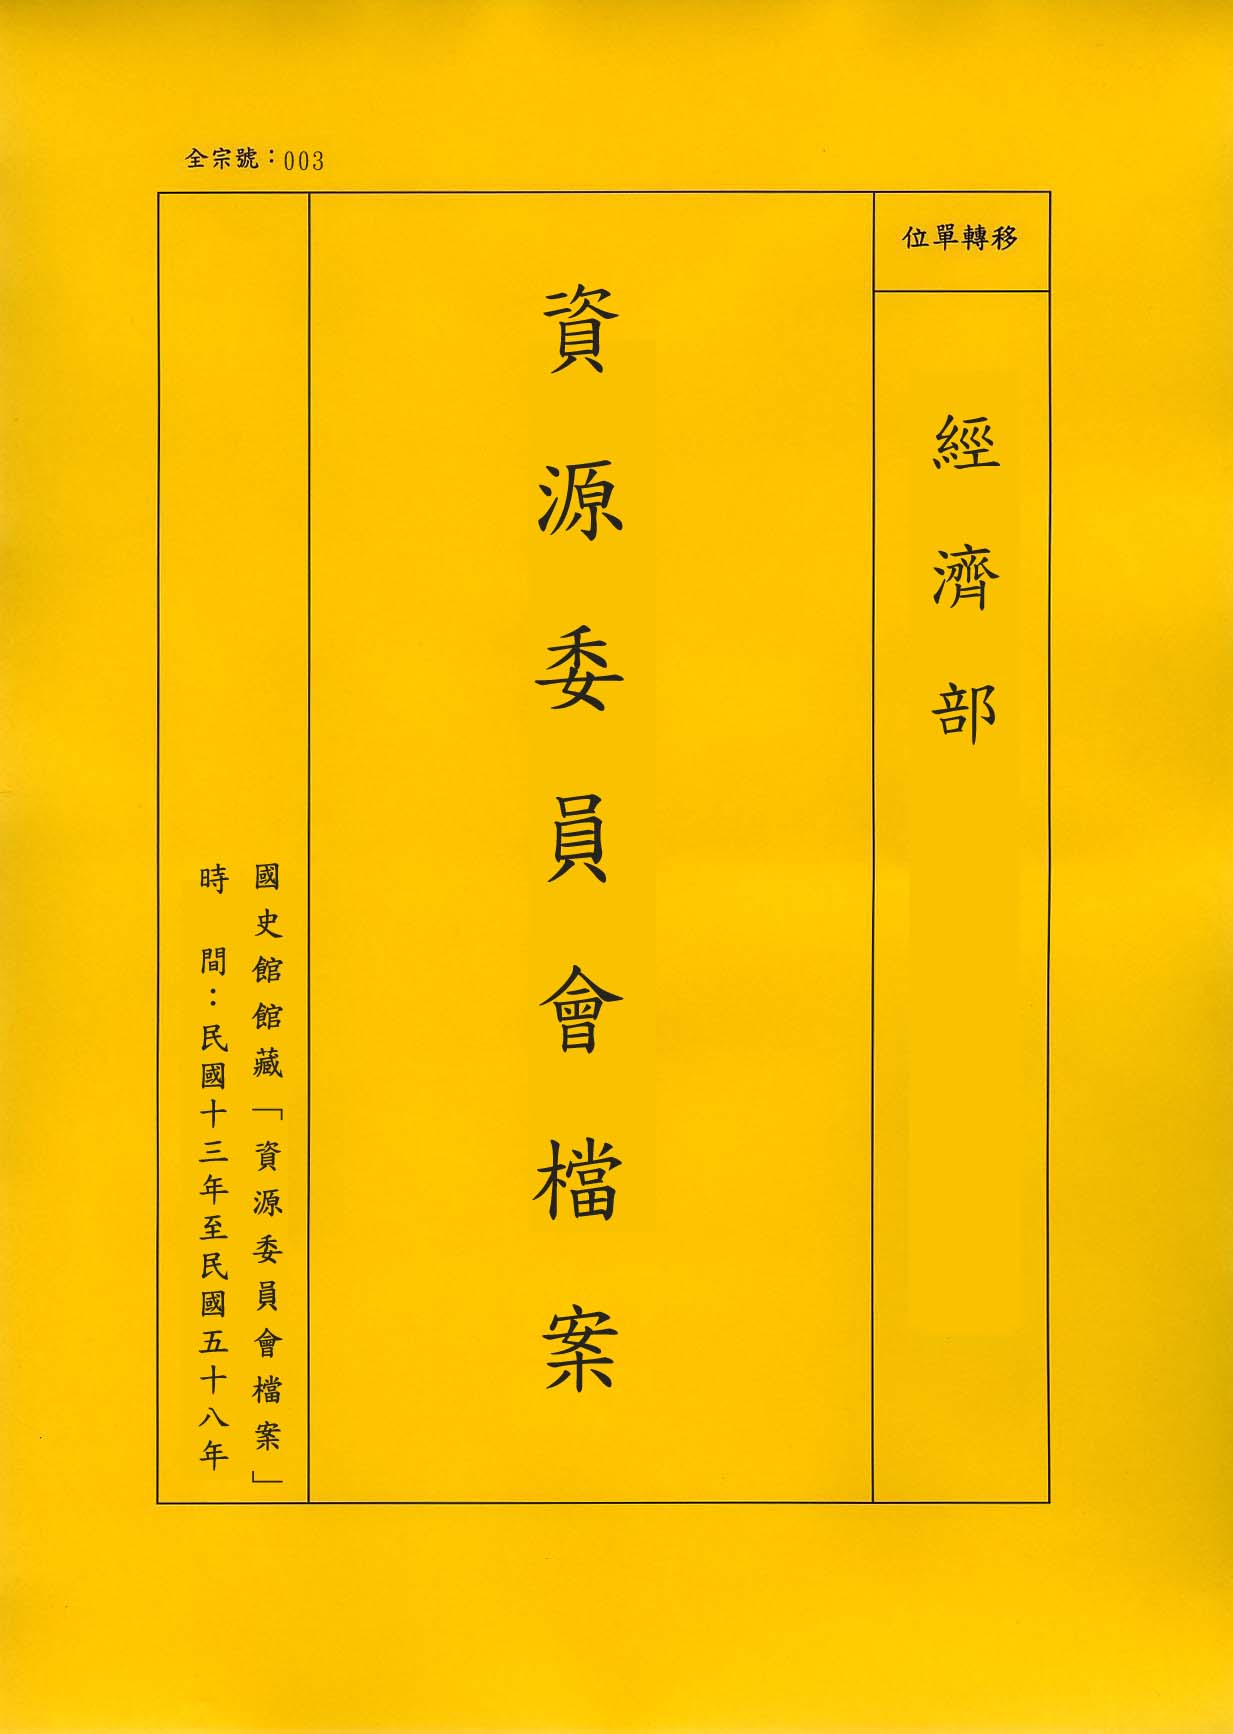 卷名:歐陽藻函件 Letter of T. T. Eoyang(003-020600-2030)